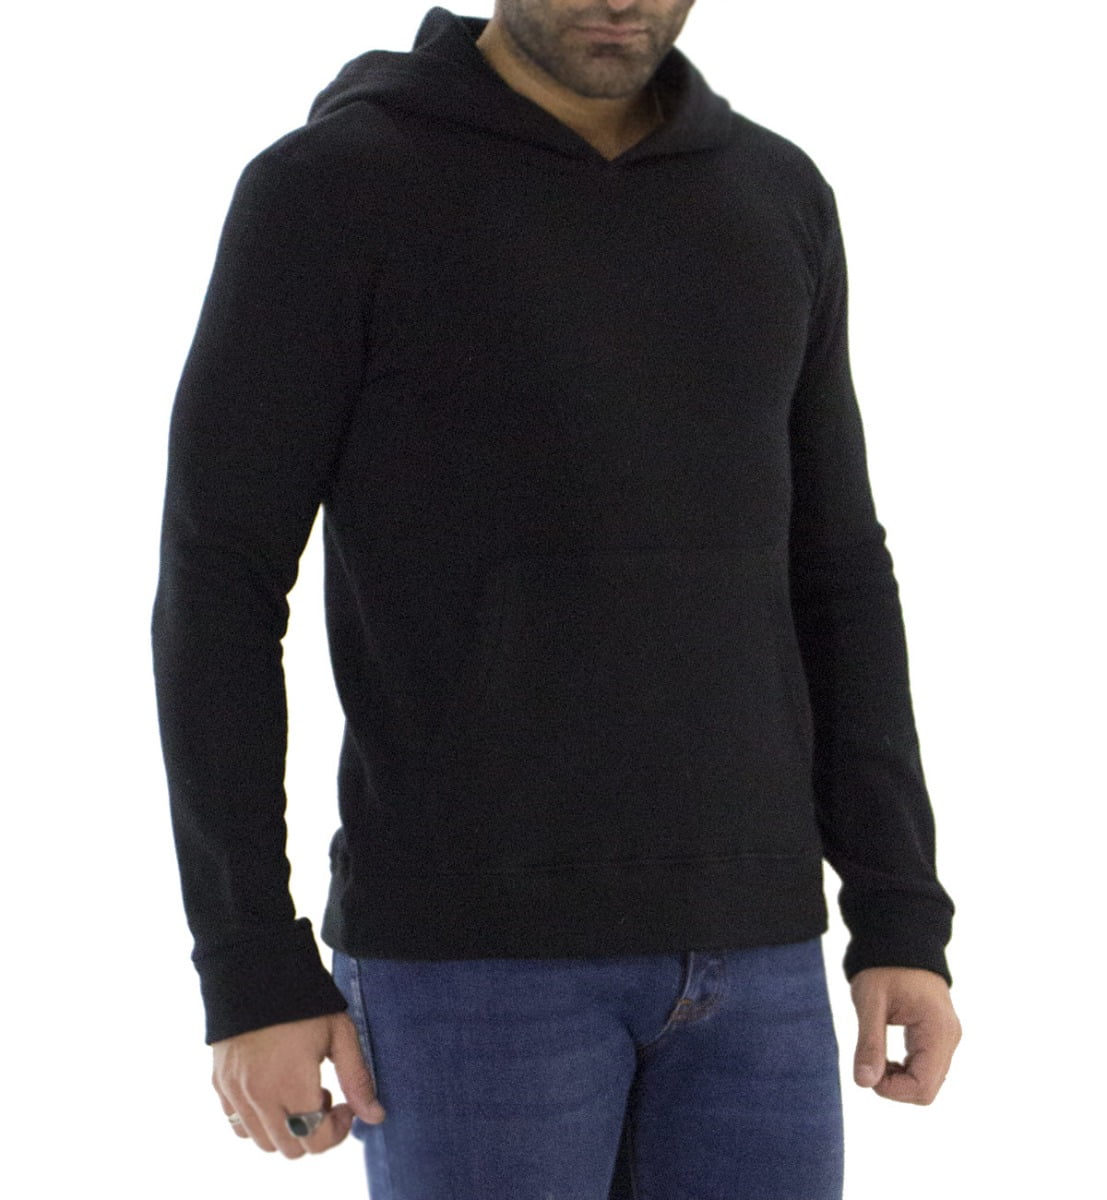 Felpa uomo nera con cappuccio invernale con elastici ai polsi e fondo elasticizzata